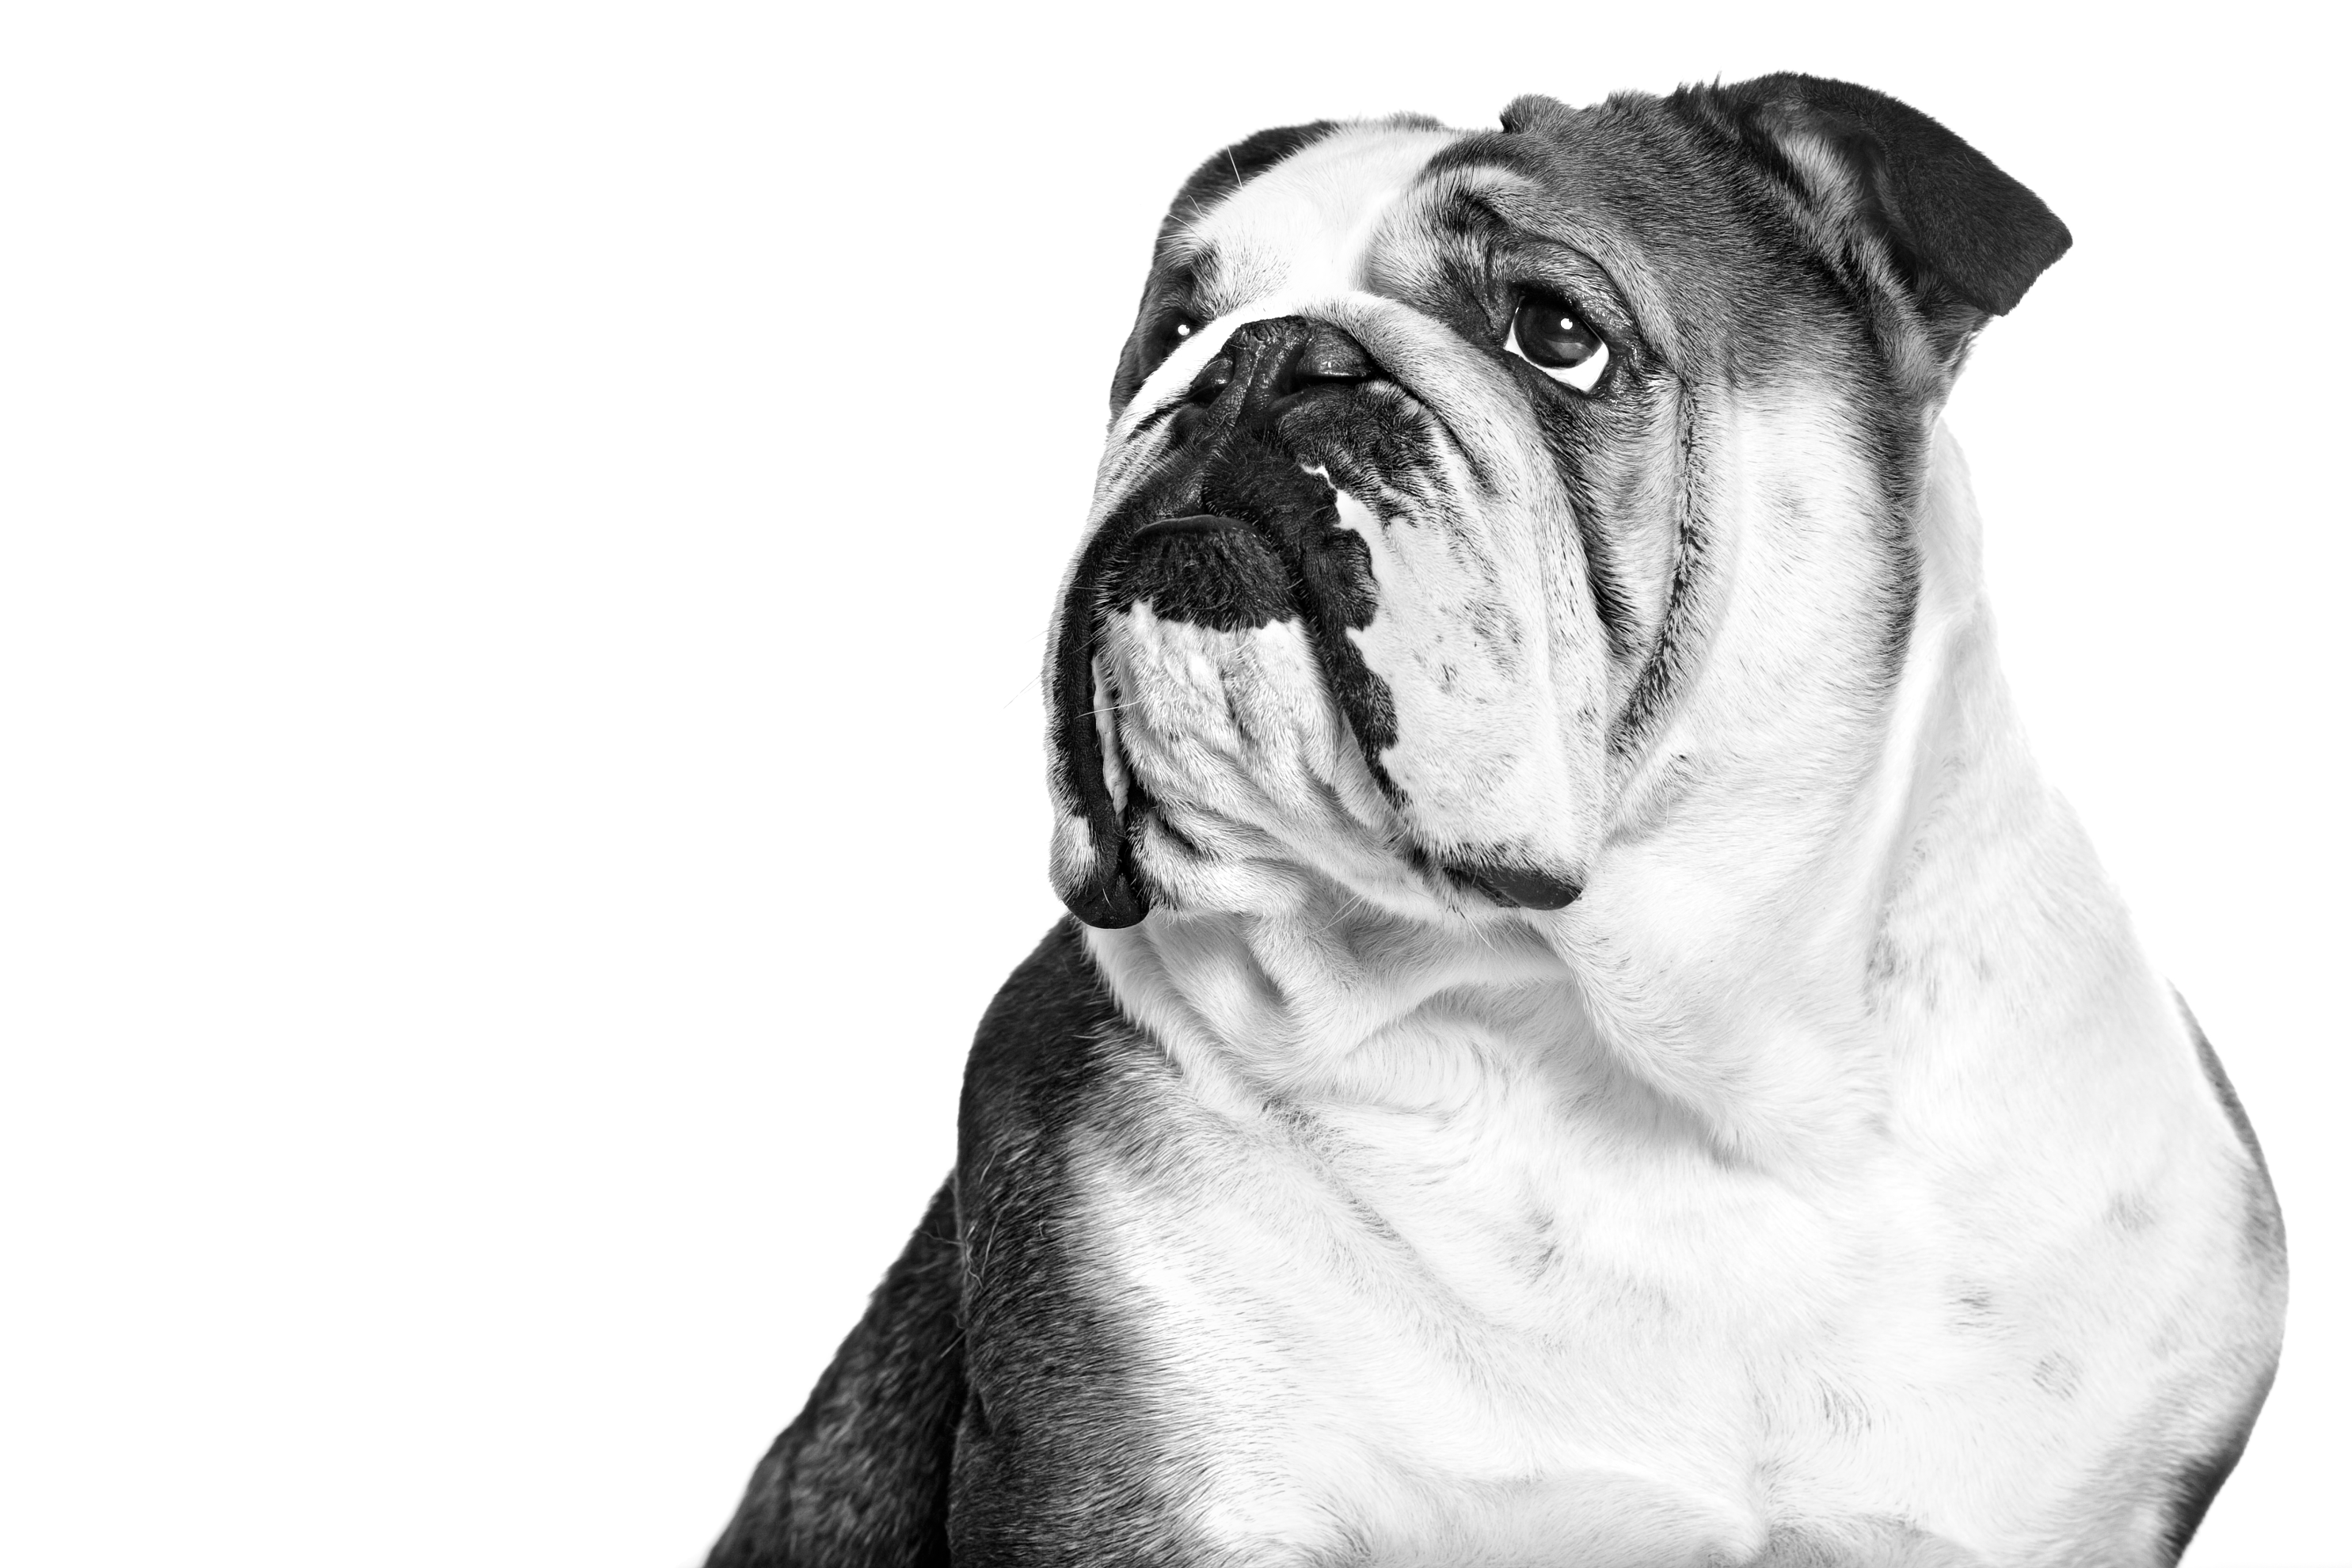 Bulldog adulto seduto in bianco e nero